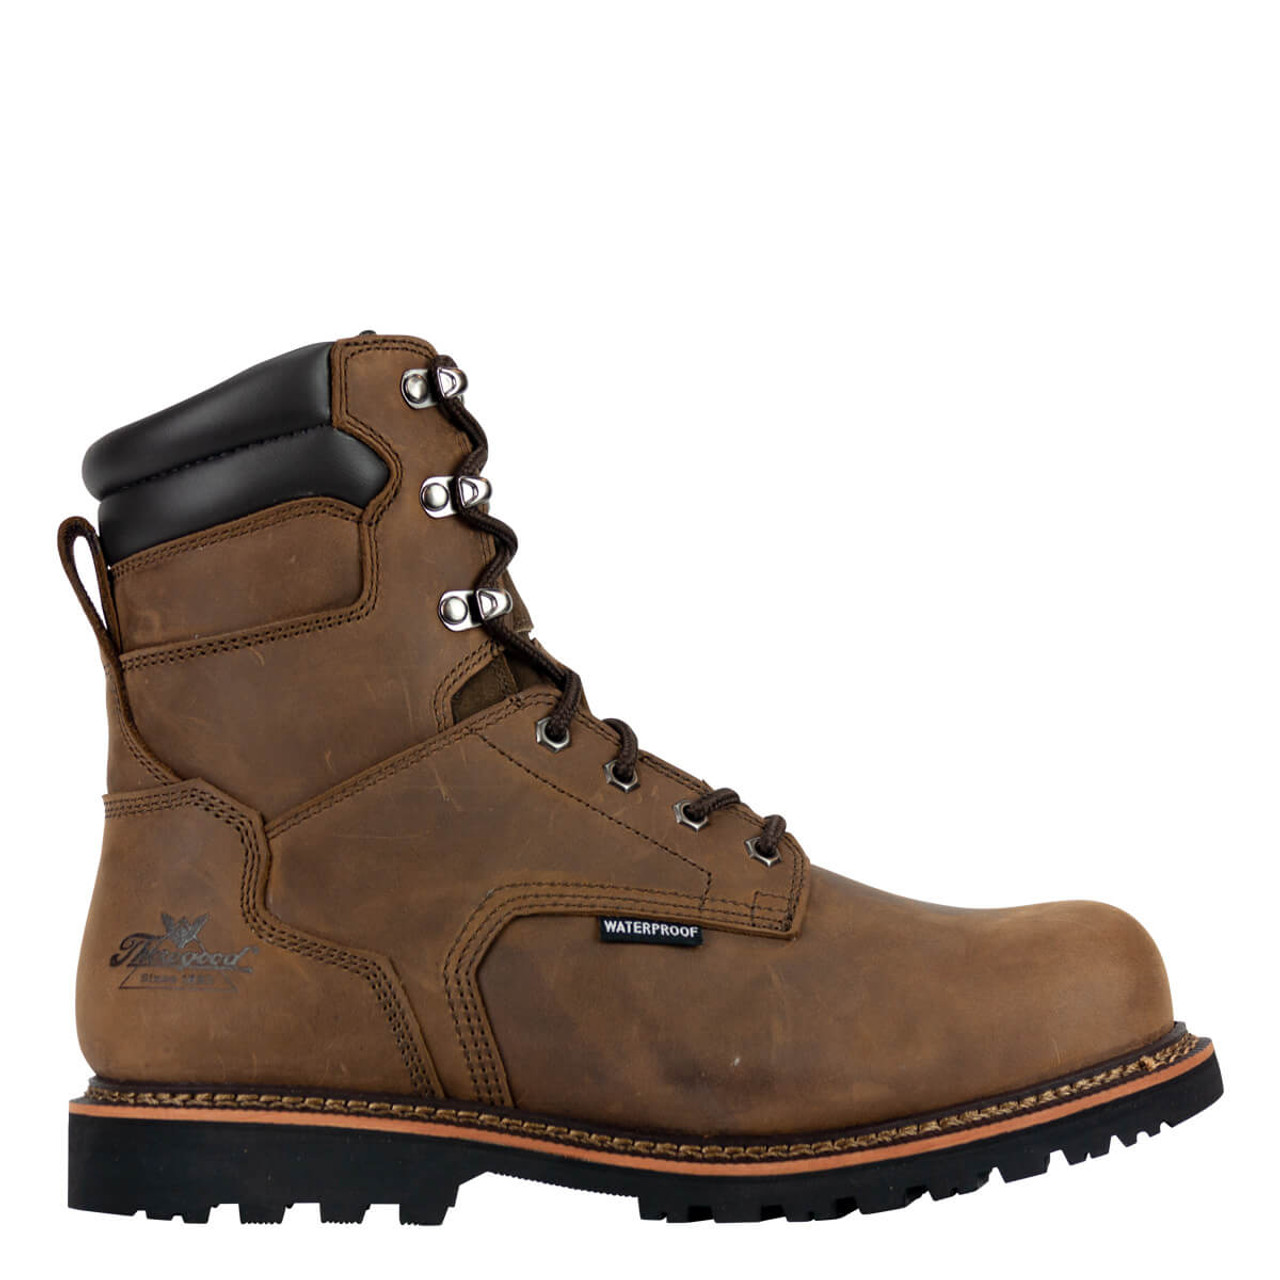 Thorogood 804-3237 V-Series Waterproof  8 Boots,  Crazyhorse Leather Upper, Composite Safety Toe